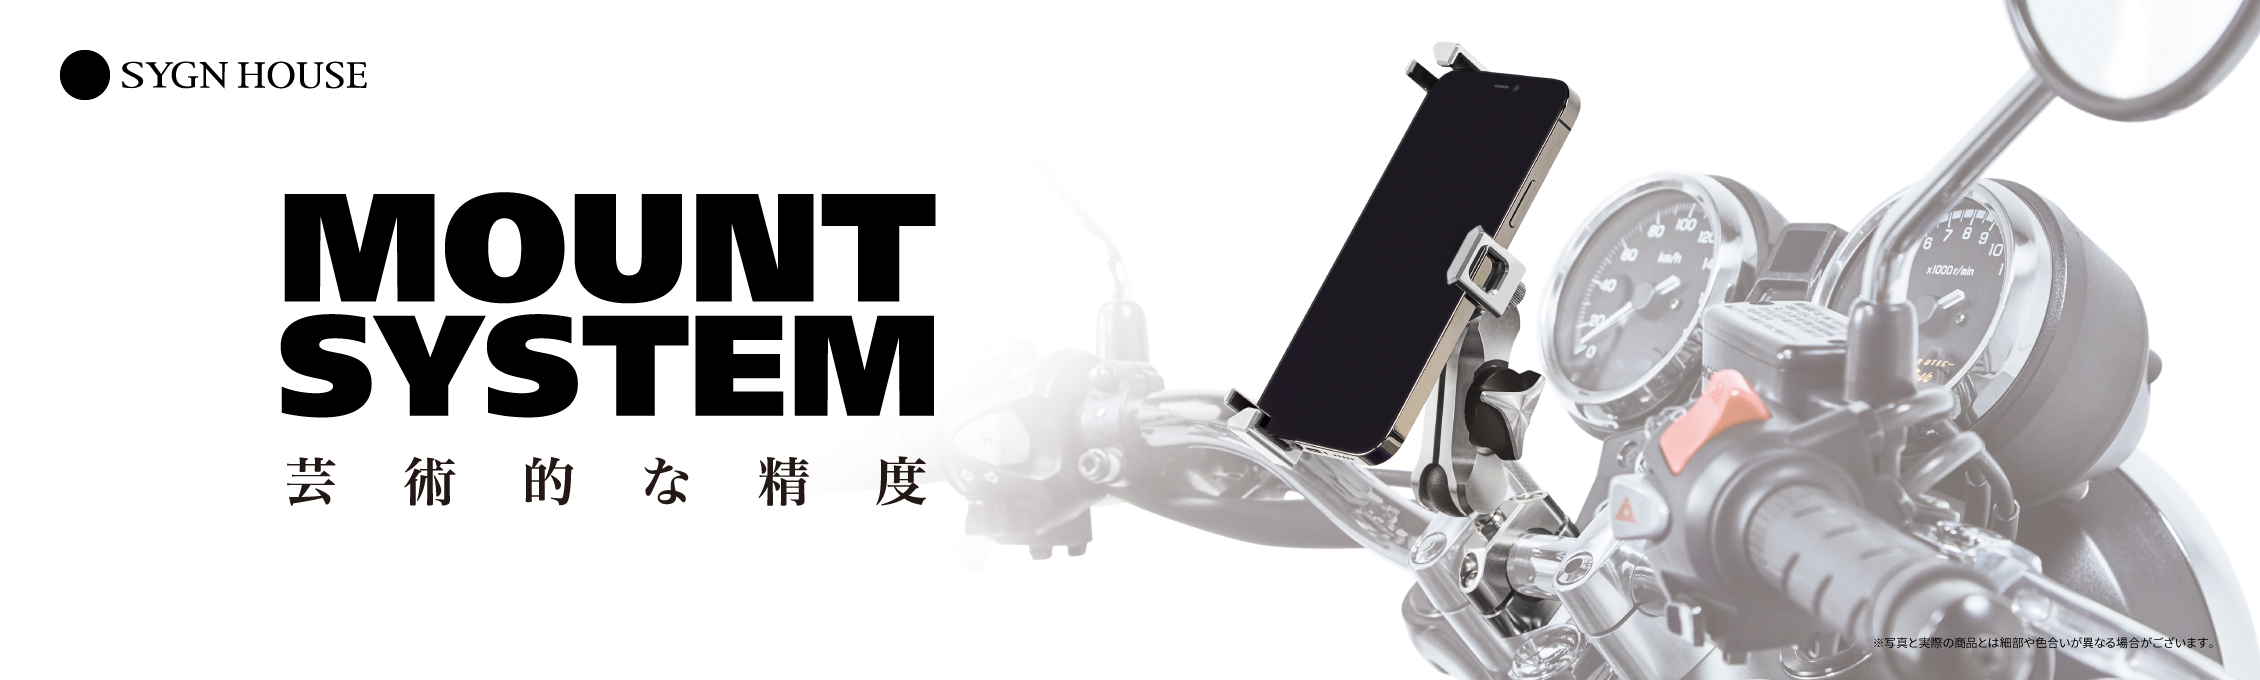 バイク用デバイスホルダー『MOUNT SYSTEM』新製品発売 - SYGNHOUSE